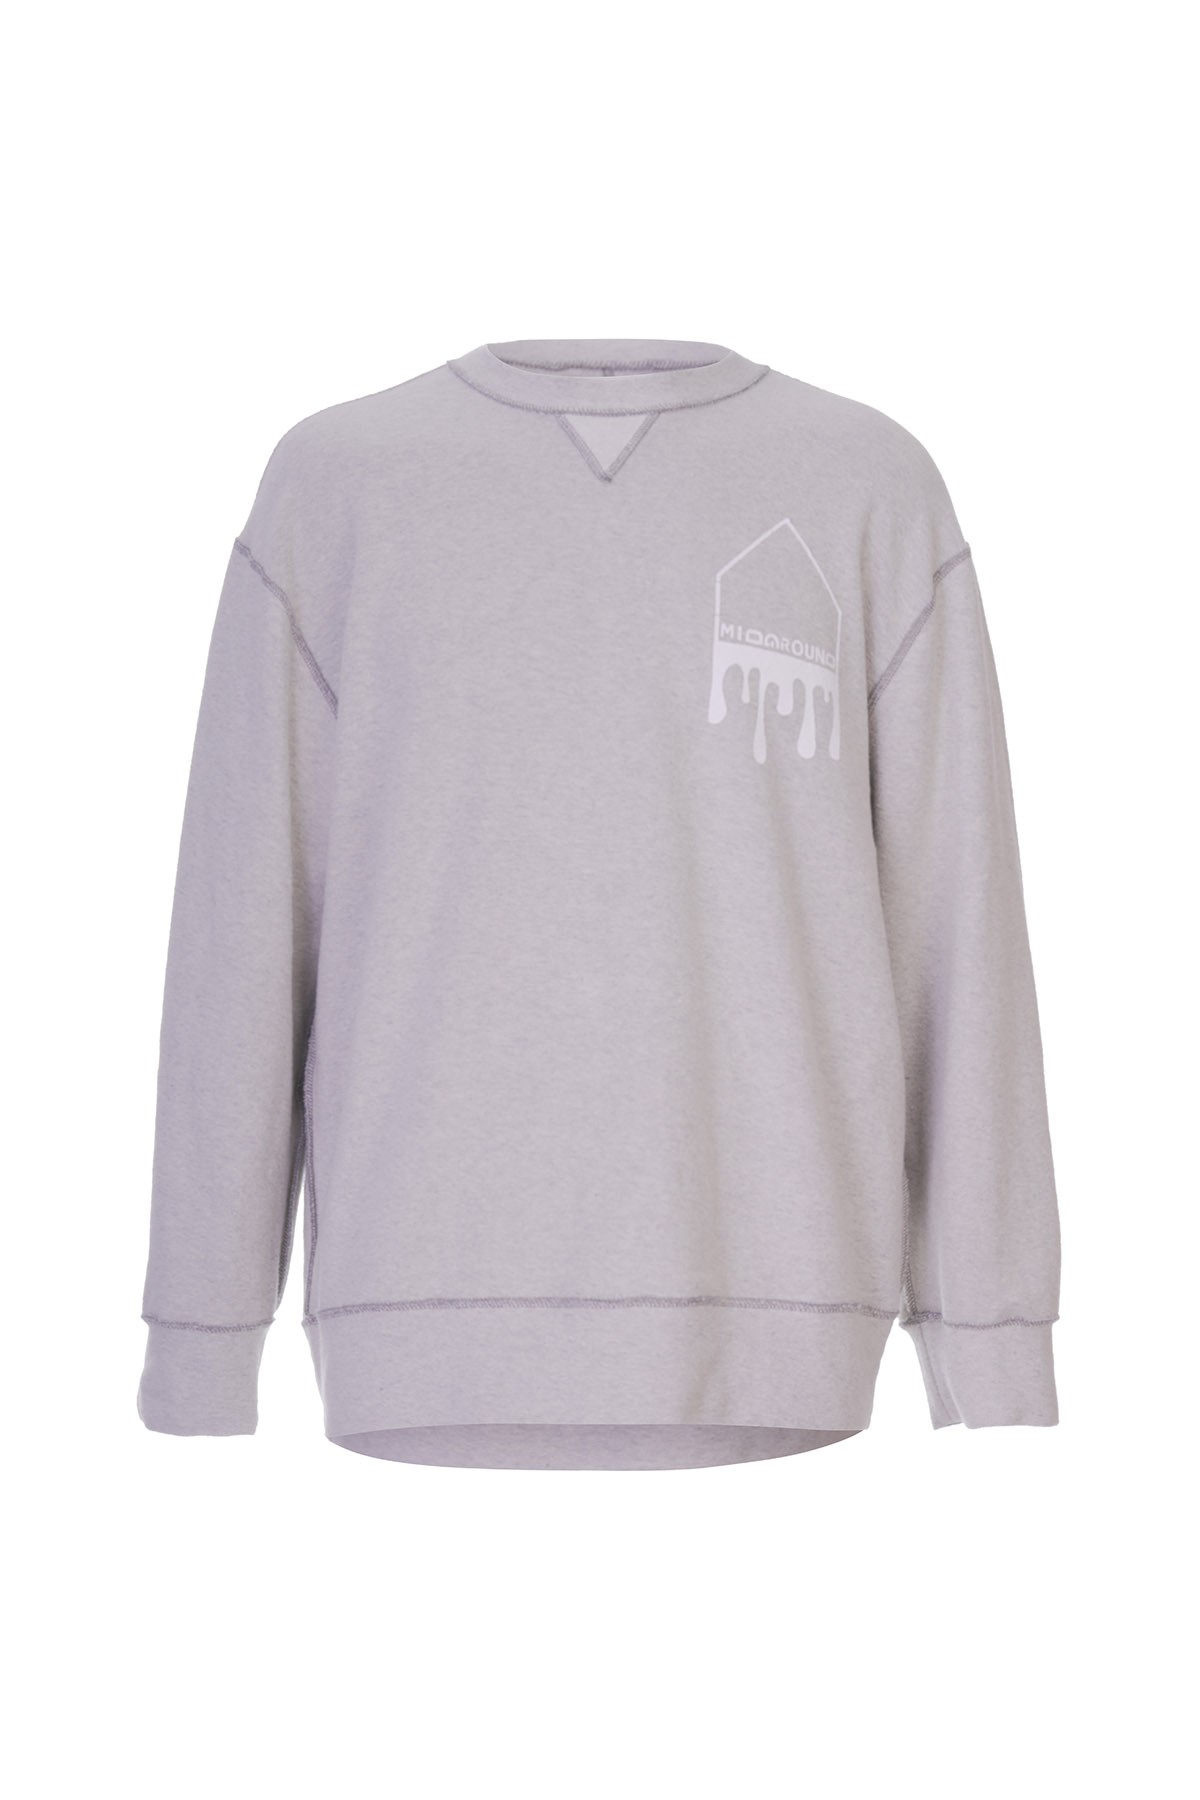 Drop #M150 Sweatshirt - Gray